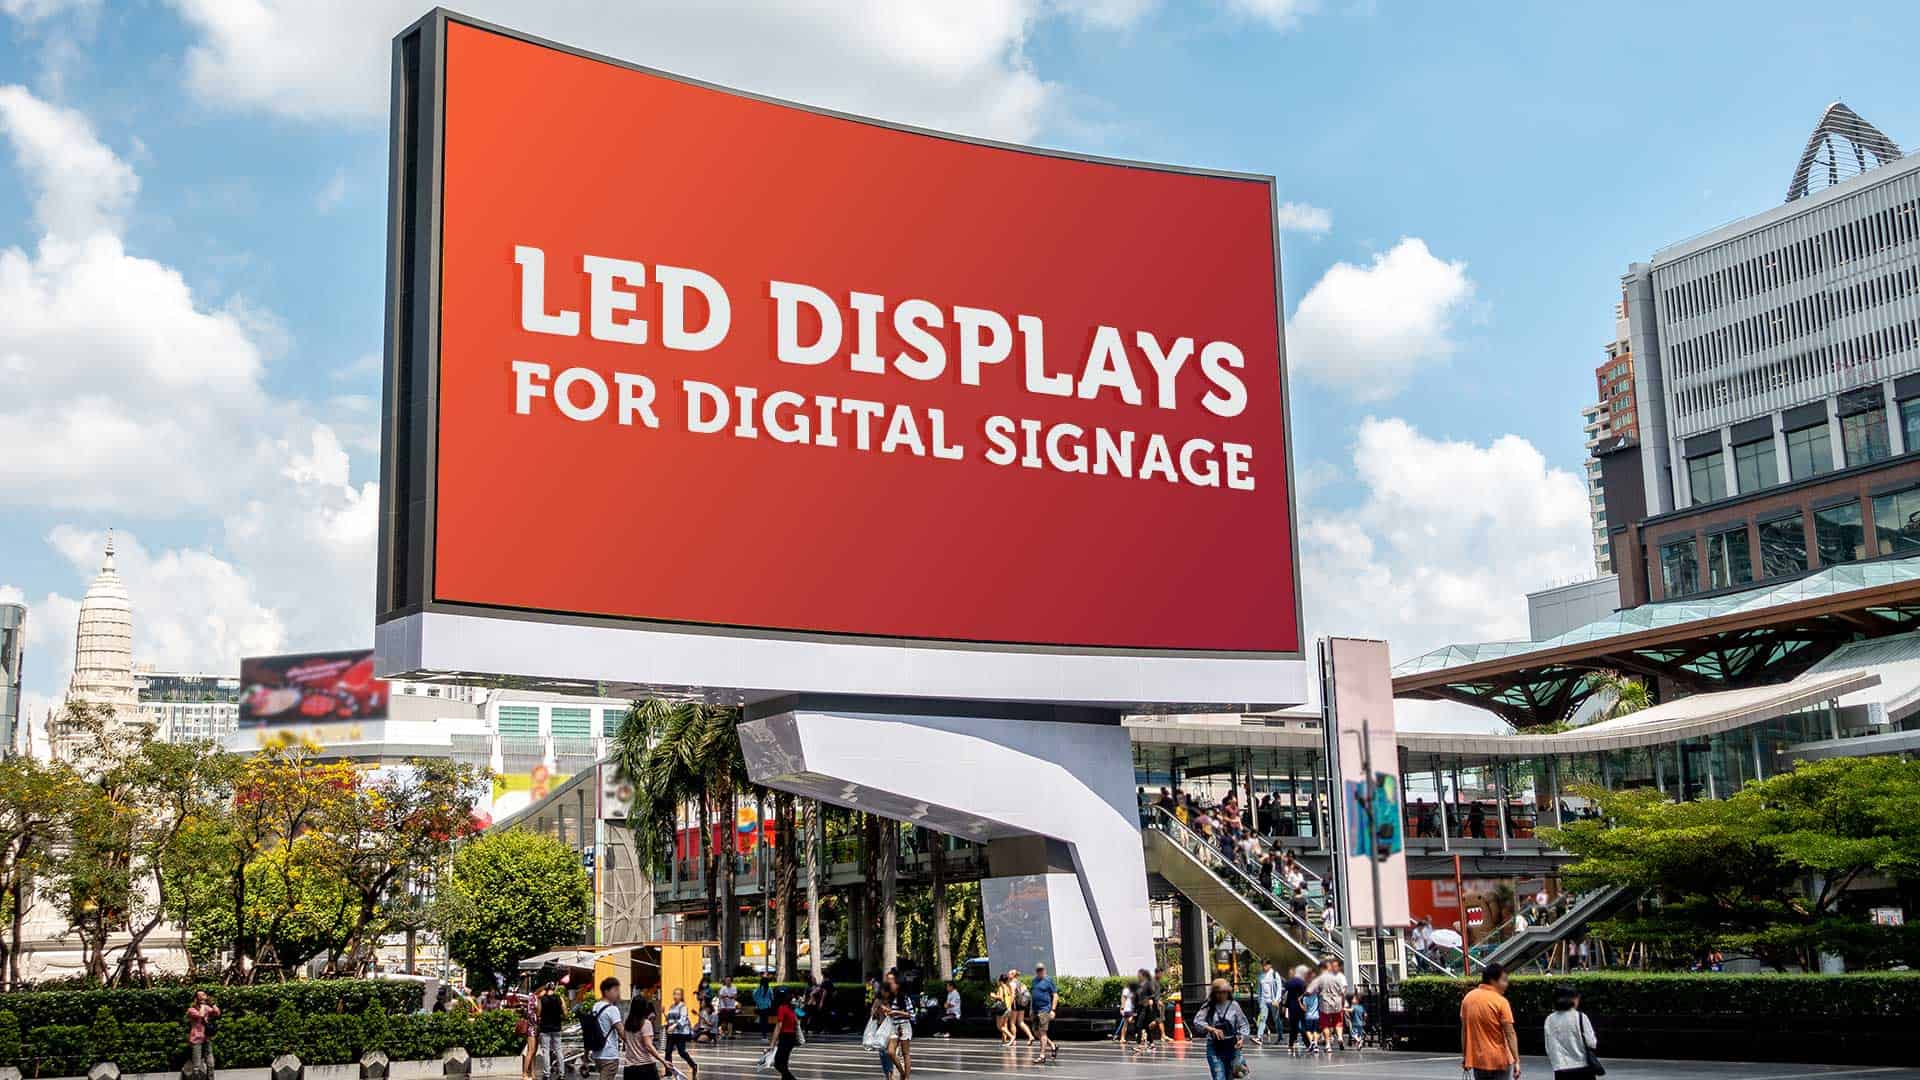 LED Displays for Digital Signage